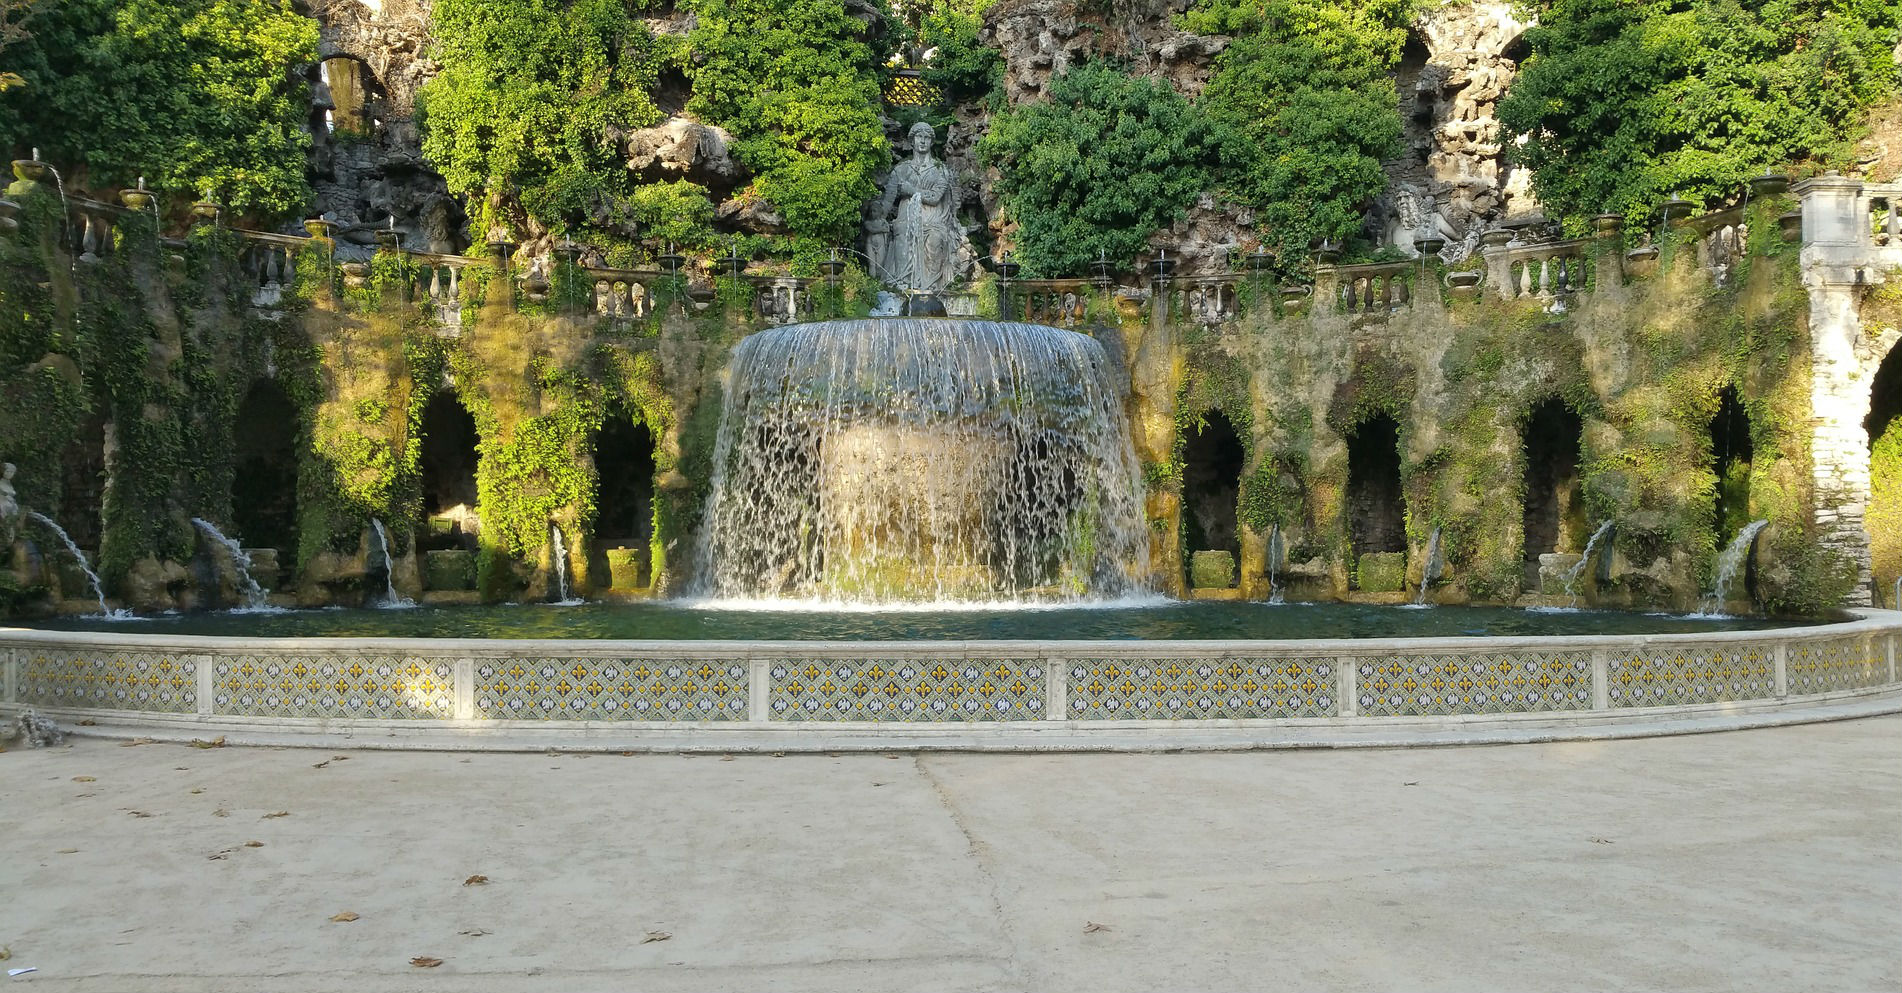 A fountain in a 16th century villa in typical Renaissance architecture in Tivoli,Rome